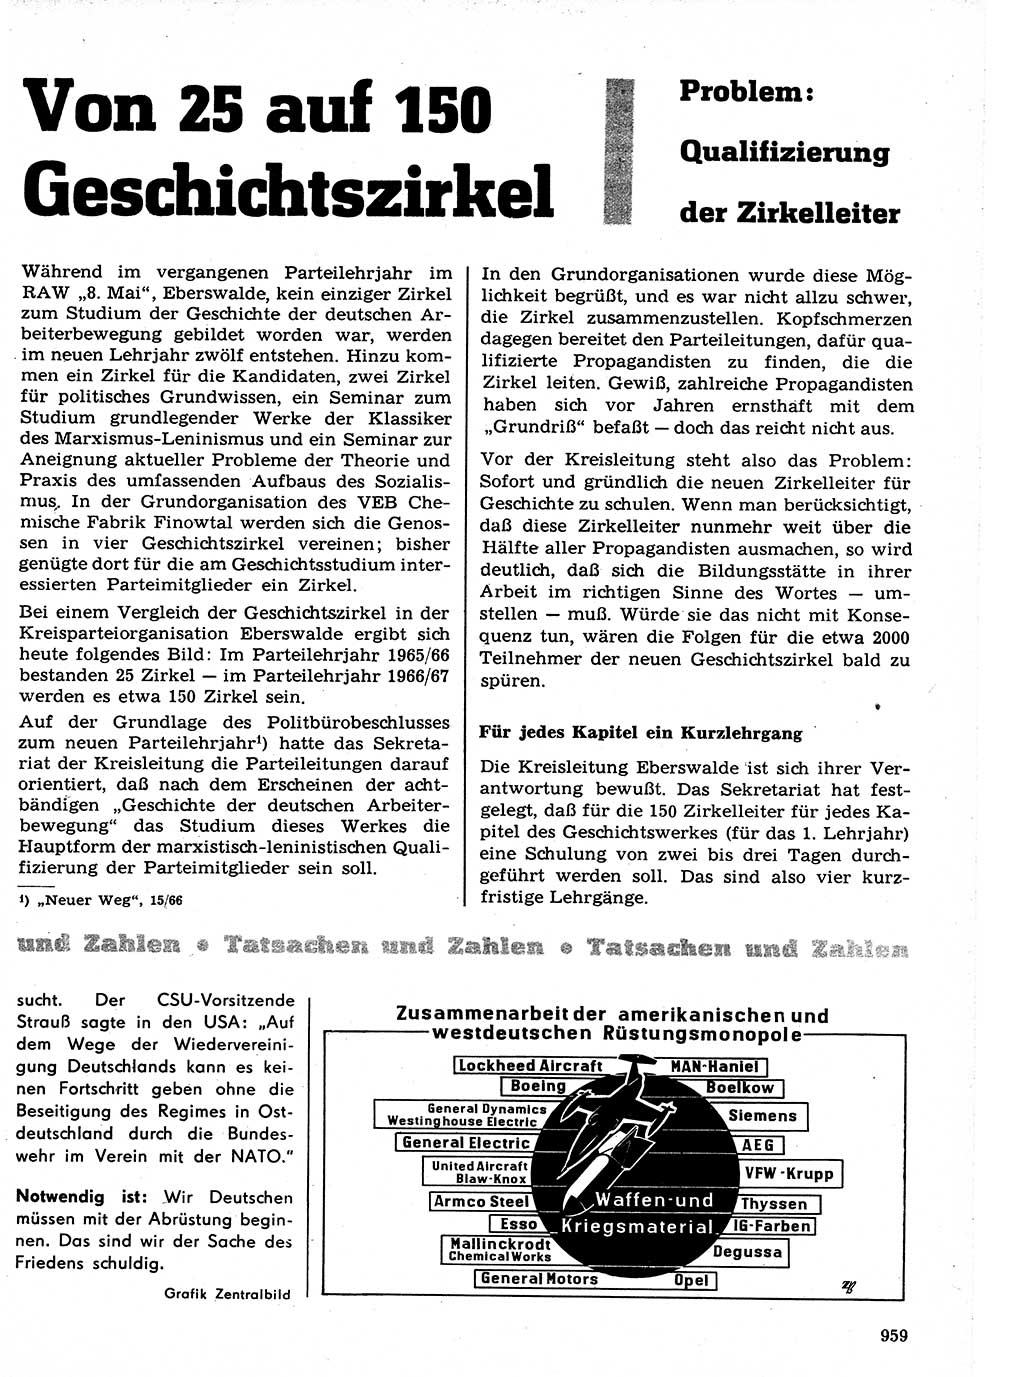 Neuer Weg (NW), Organ des Zentralkomitees (ZK) der SED (Sozialistische Einheitspartei Deutschlands) für Fragen des Parteilebens, 21. Jahrgang [Deutsche Demokratische Republik (DDR)] 1966, Seite 959 (NW ZK SED DDR 1966, S. 959)